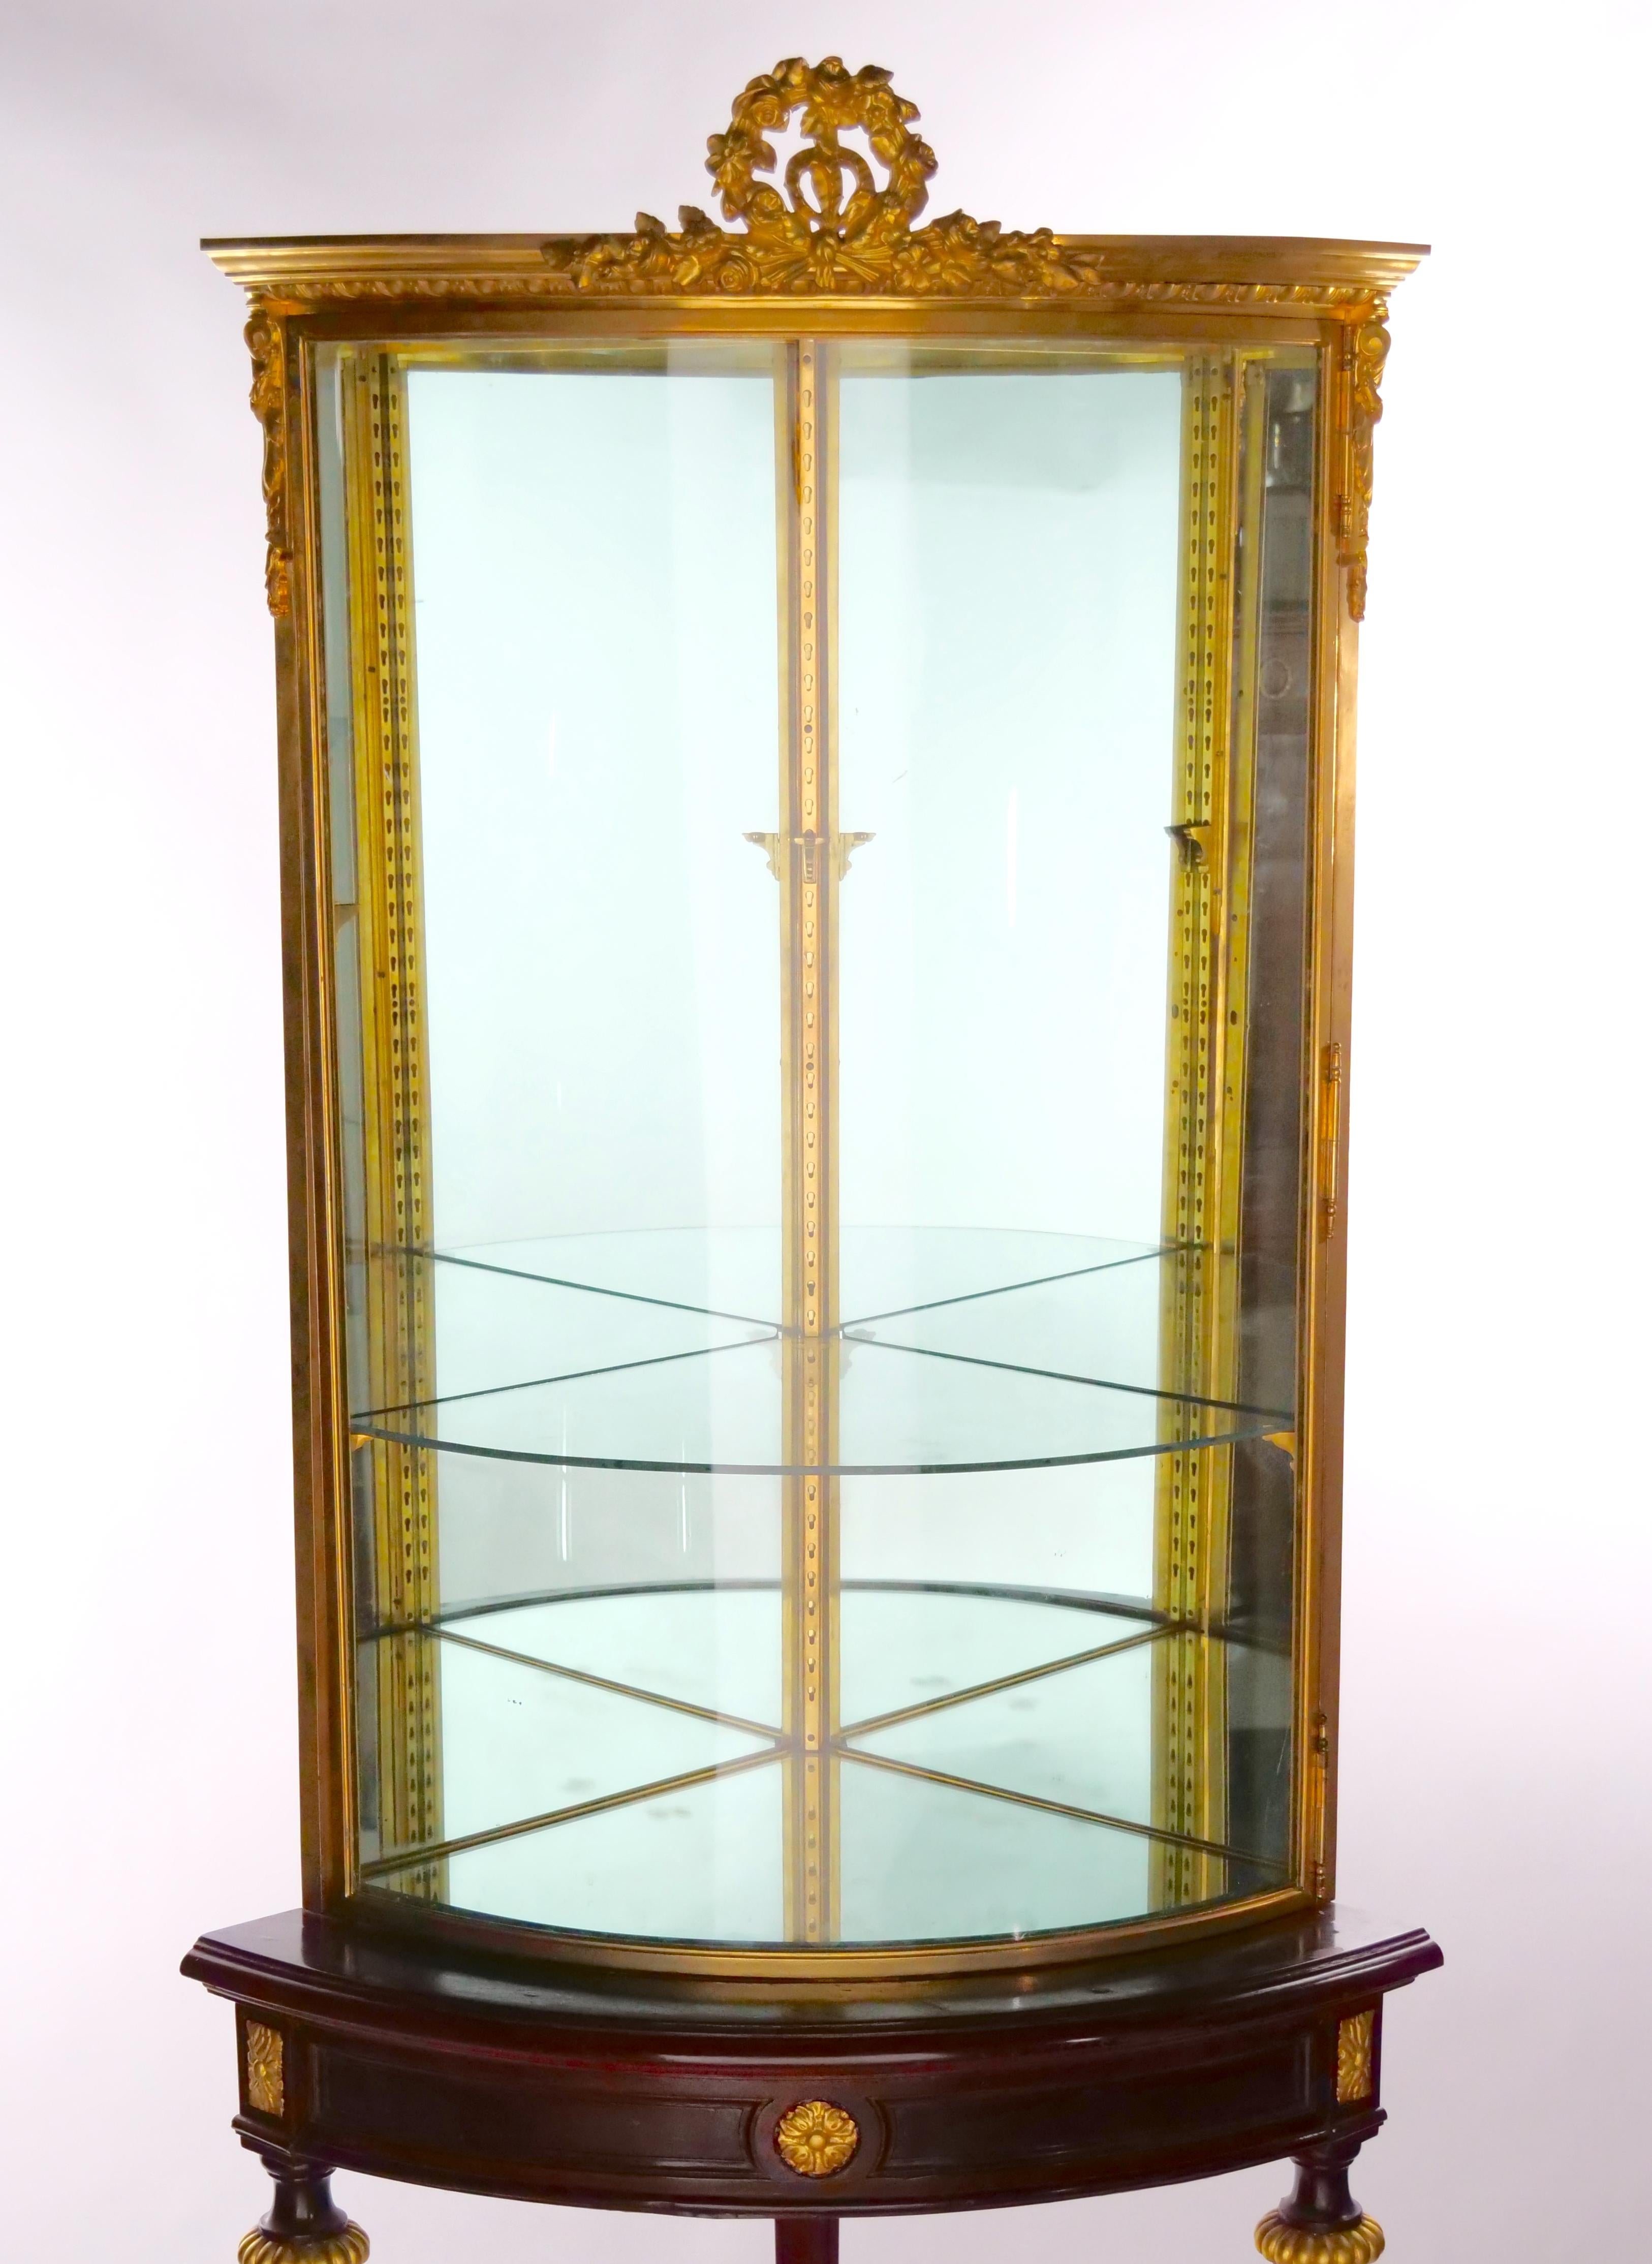 Deux pièces en bronze doré montées  cadre en bois d'acajou tenant la base d'une vitrine d'angle curio, avec cadre en verre et accent doré. Le meuble de coin curio / vitrine présente une forme démilune, des pieds en bois doré avec une barre